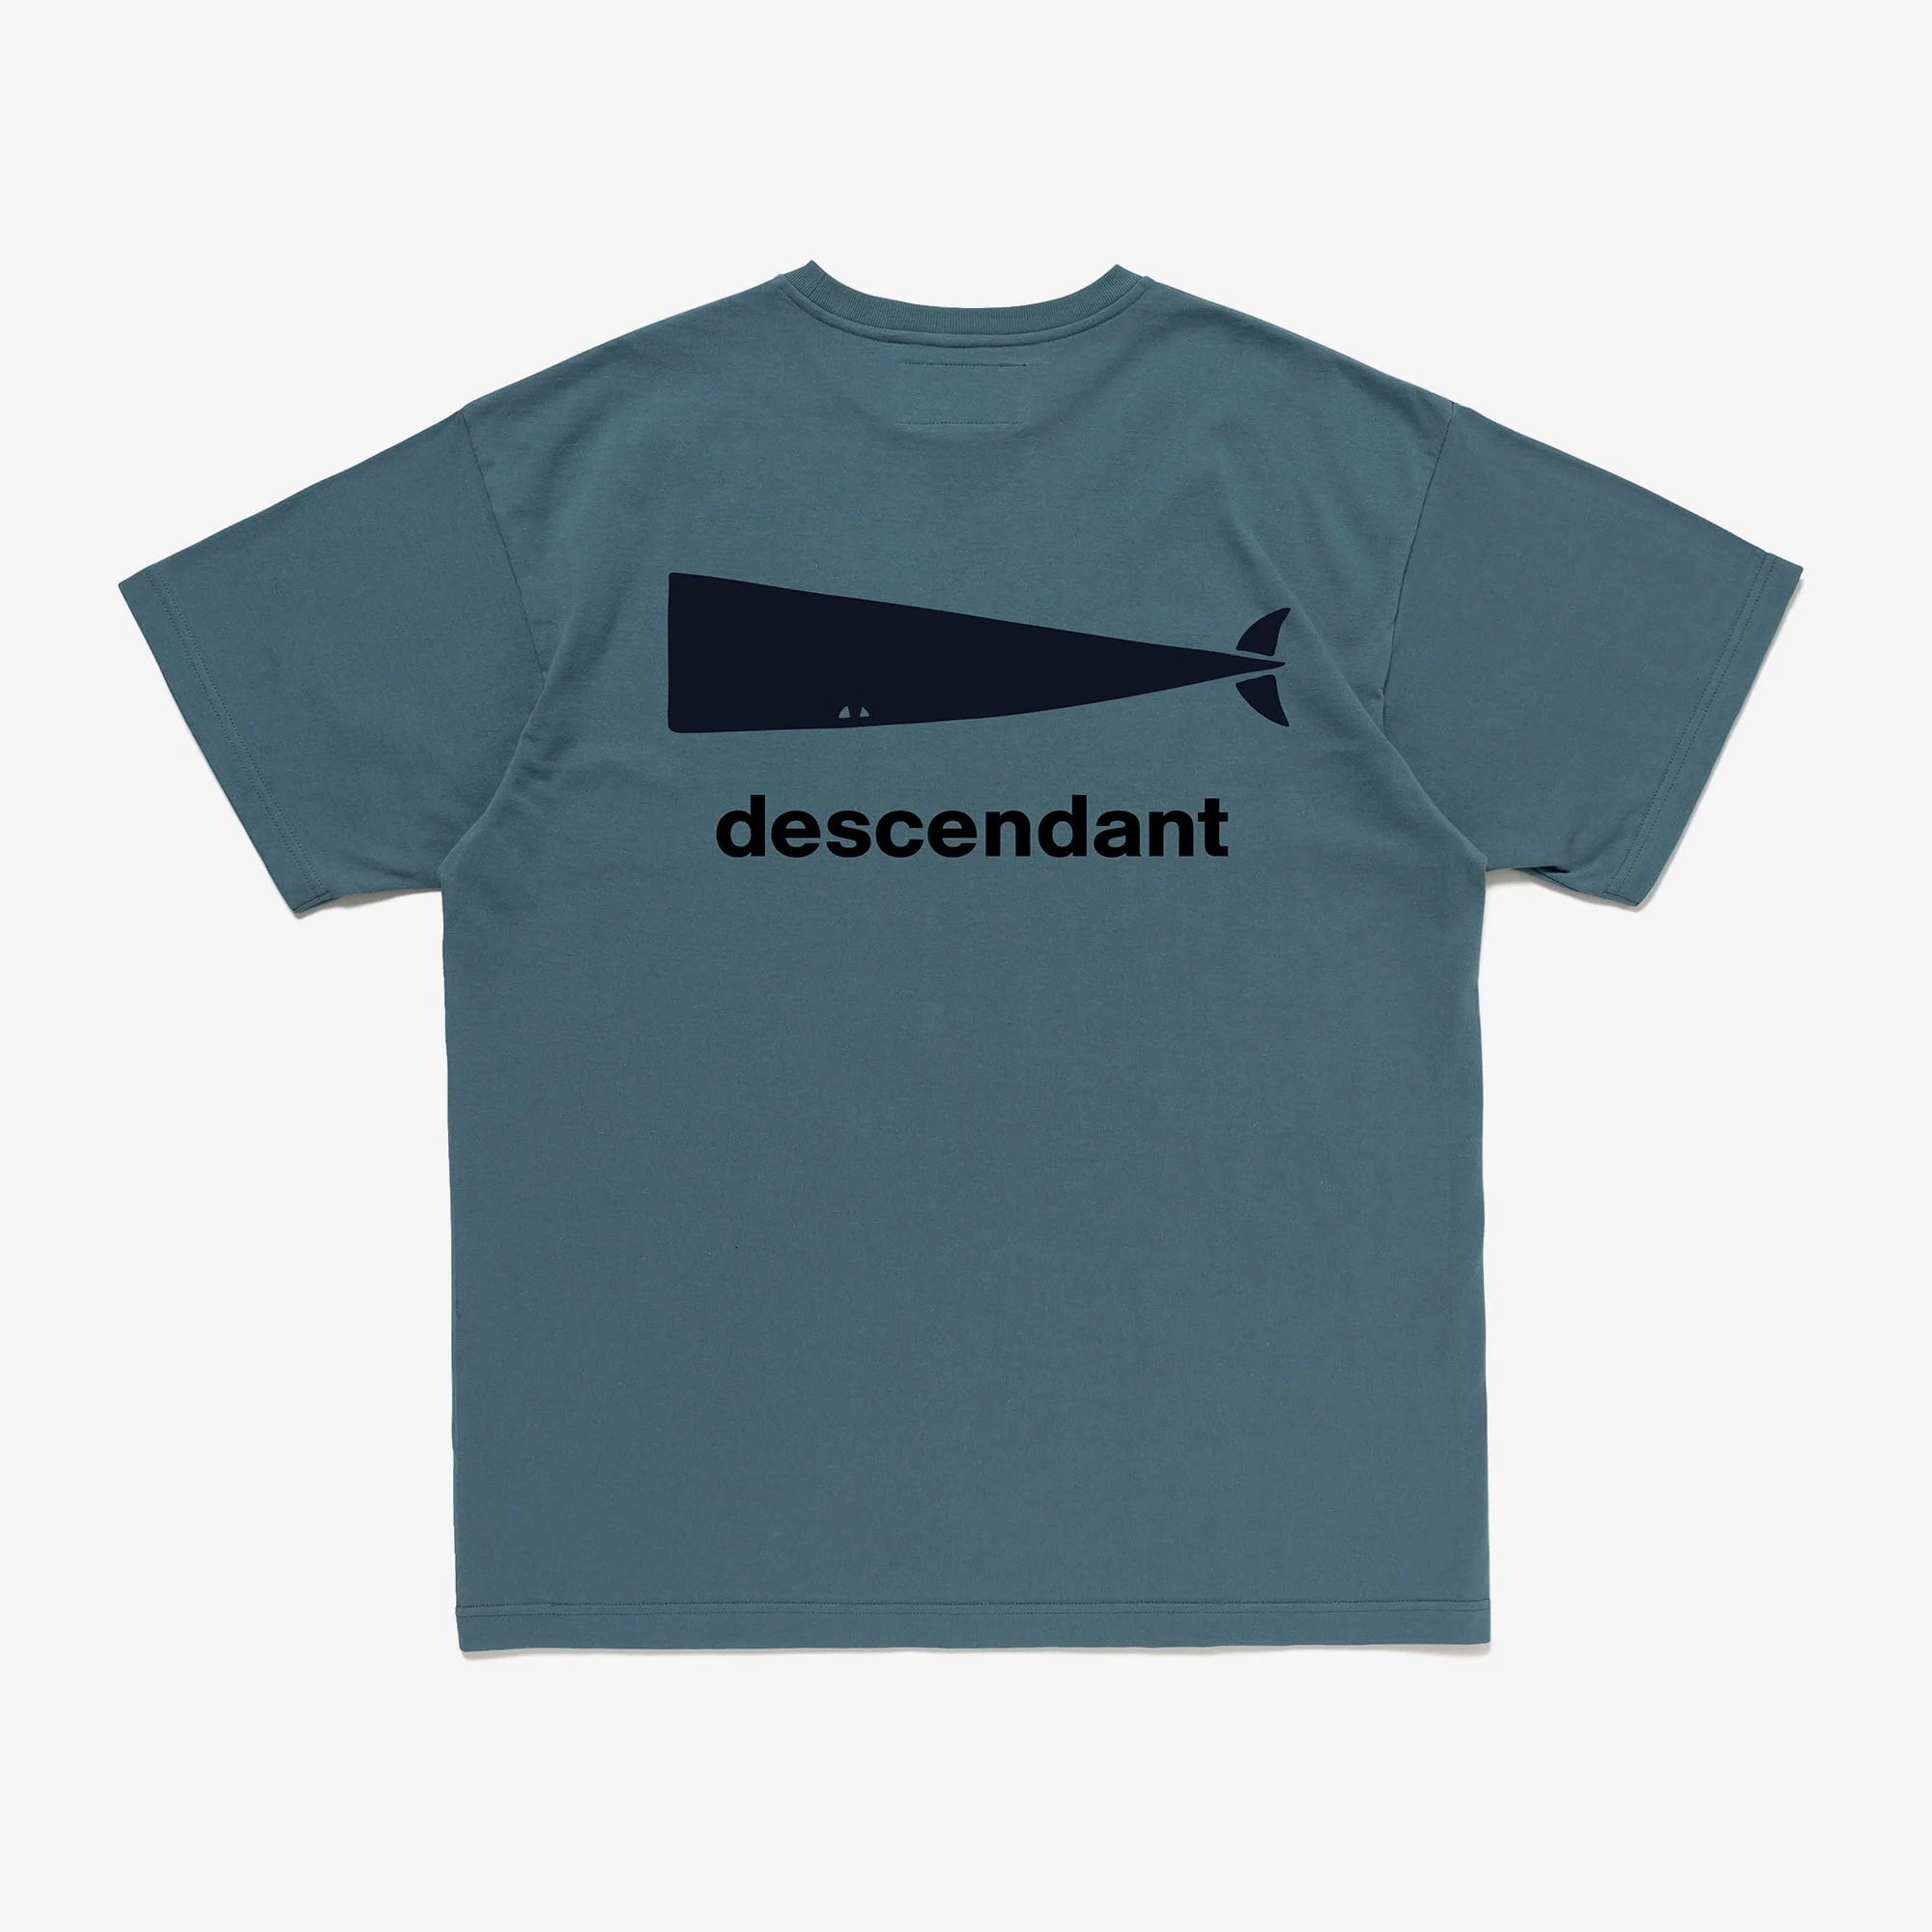 descendant – Vintage Concept Store